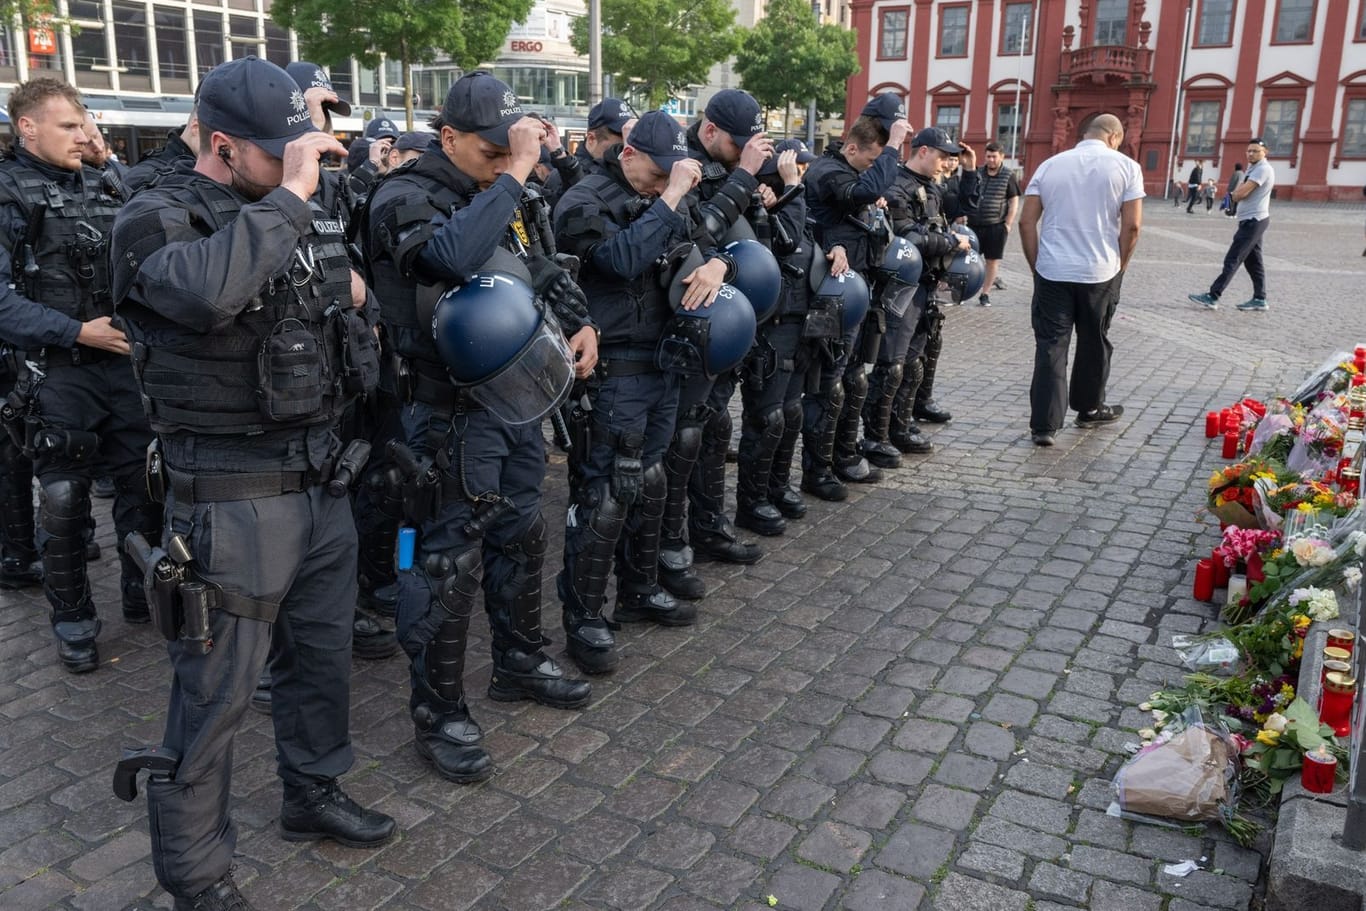 Trauer um getöteten Polizisten in Mannheim